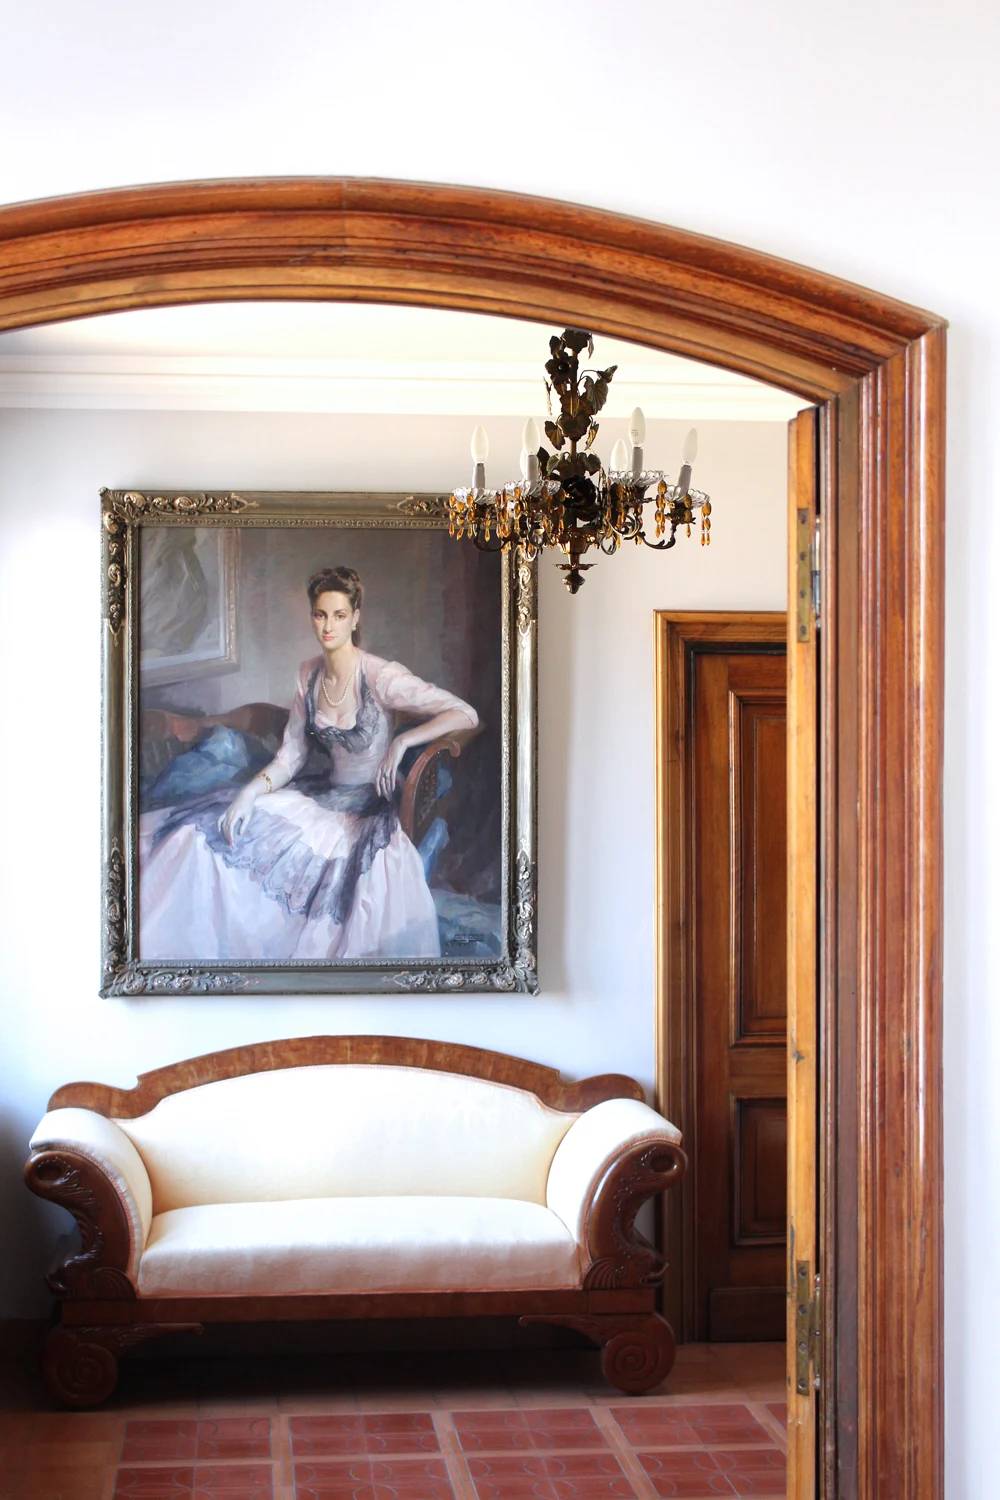 Hostal de la Gavina decor, Costa Brava, Spain - luxury travel blog